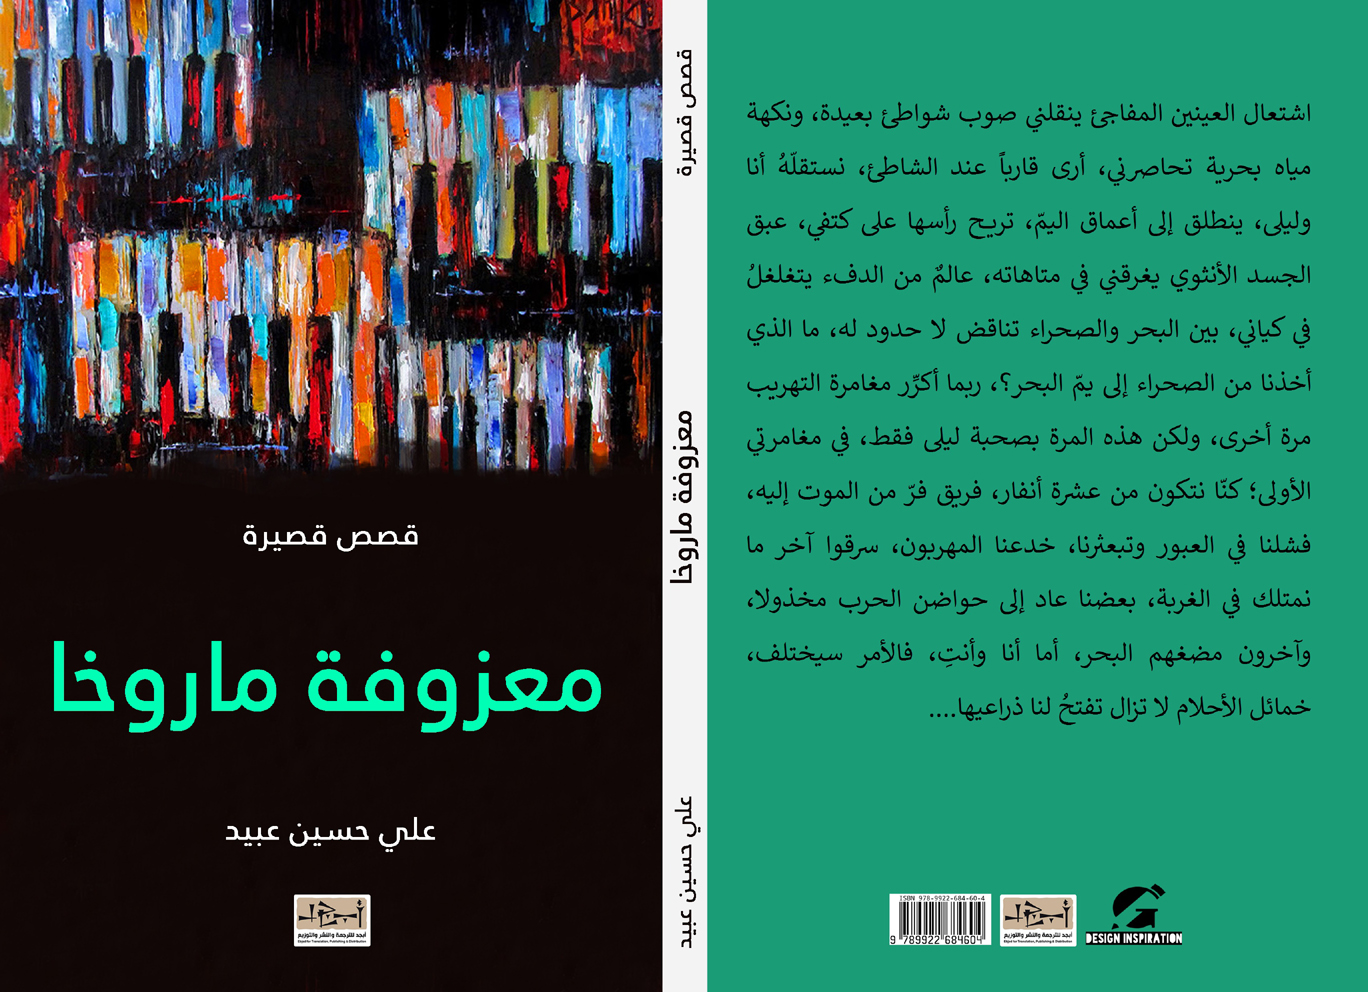 معزوفة ماروخا - مجموعة قصصية - علي حسين عبيد